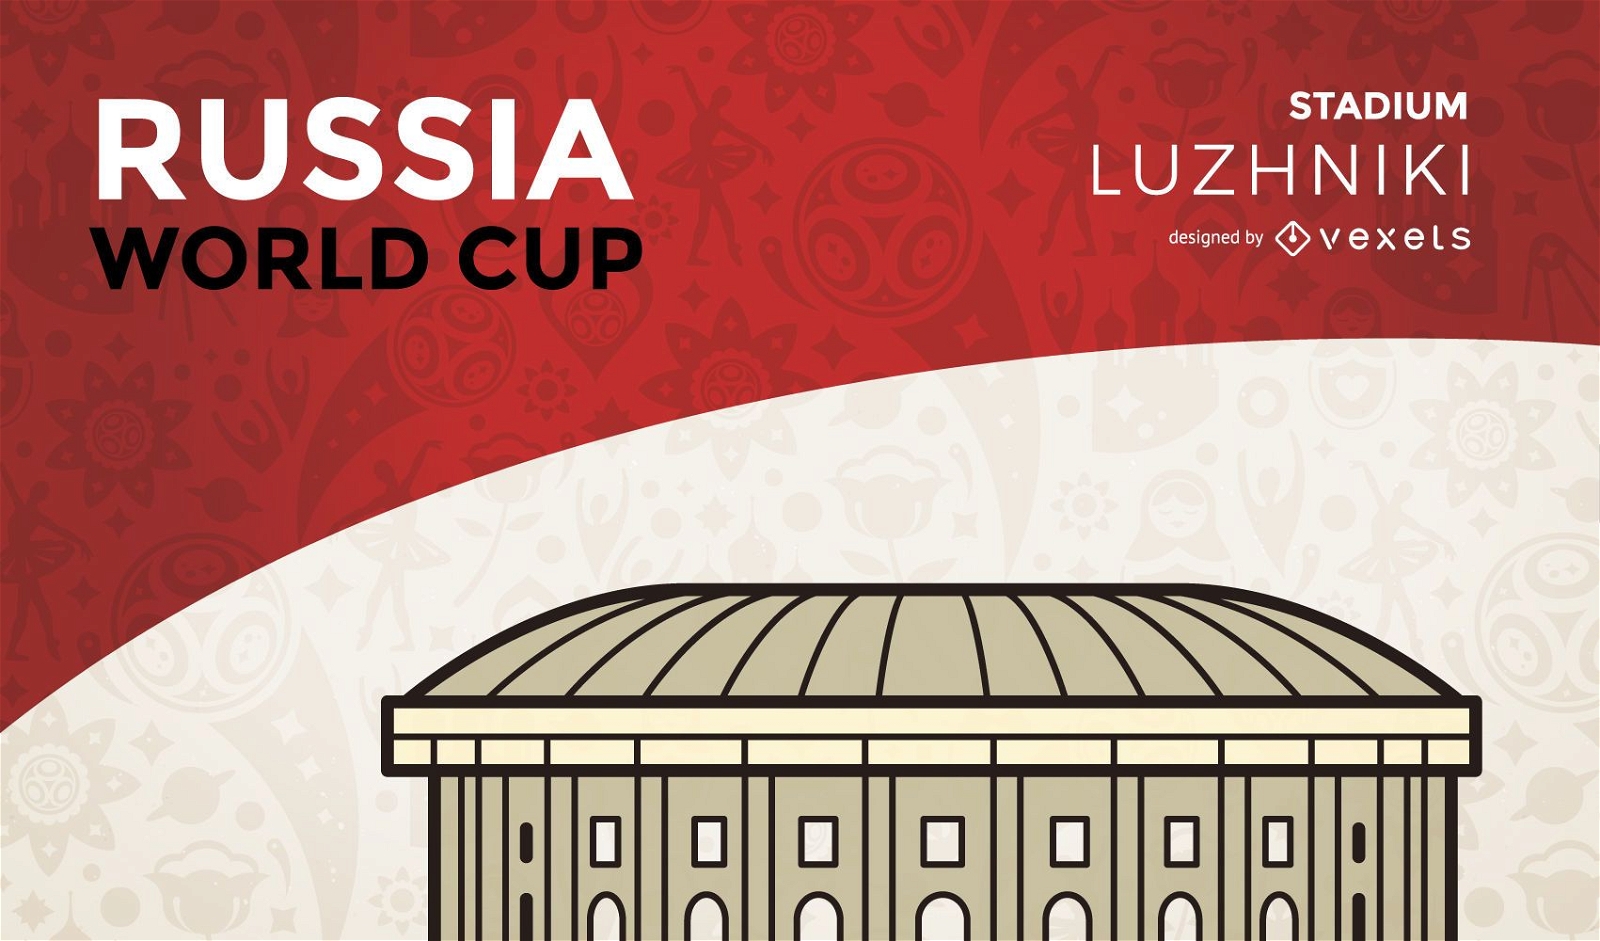 Luzhniki world cup stadium